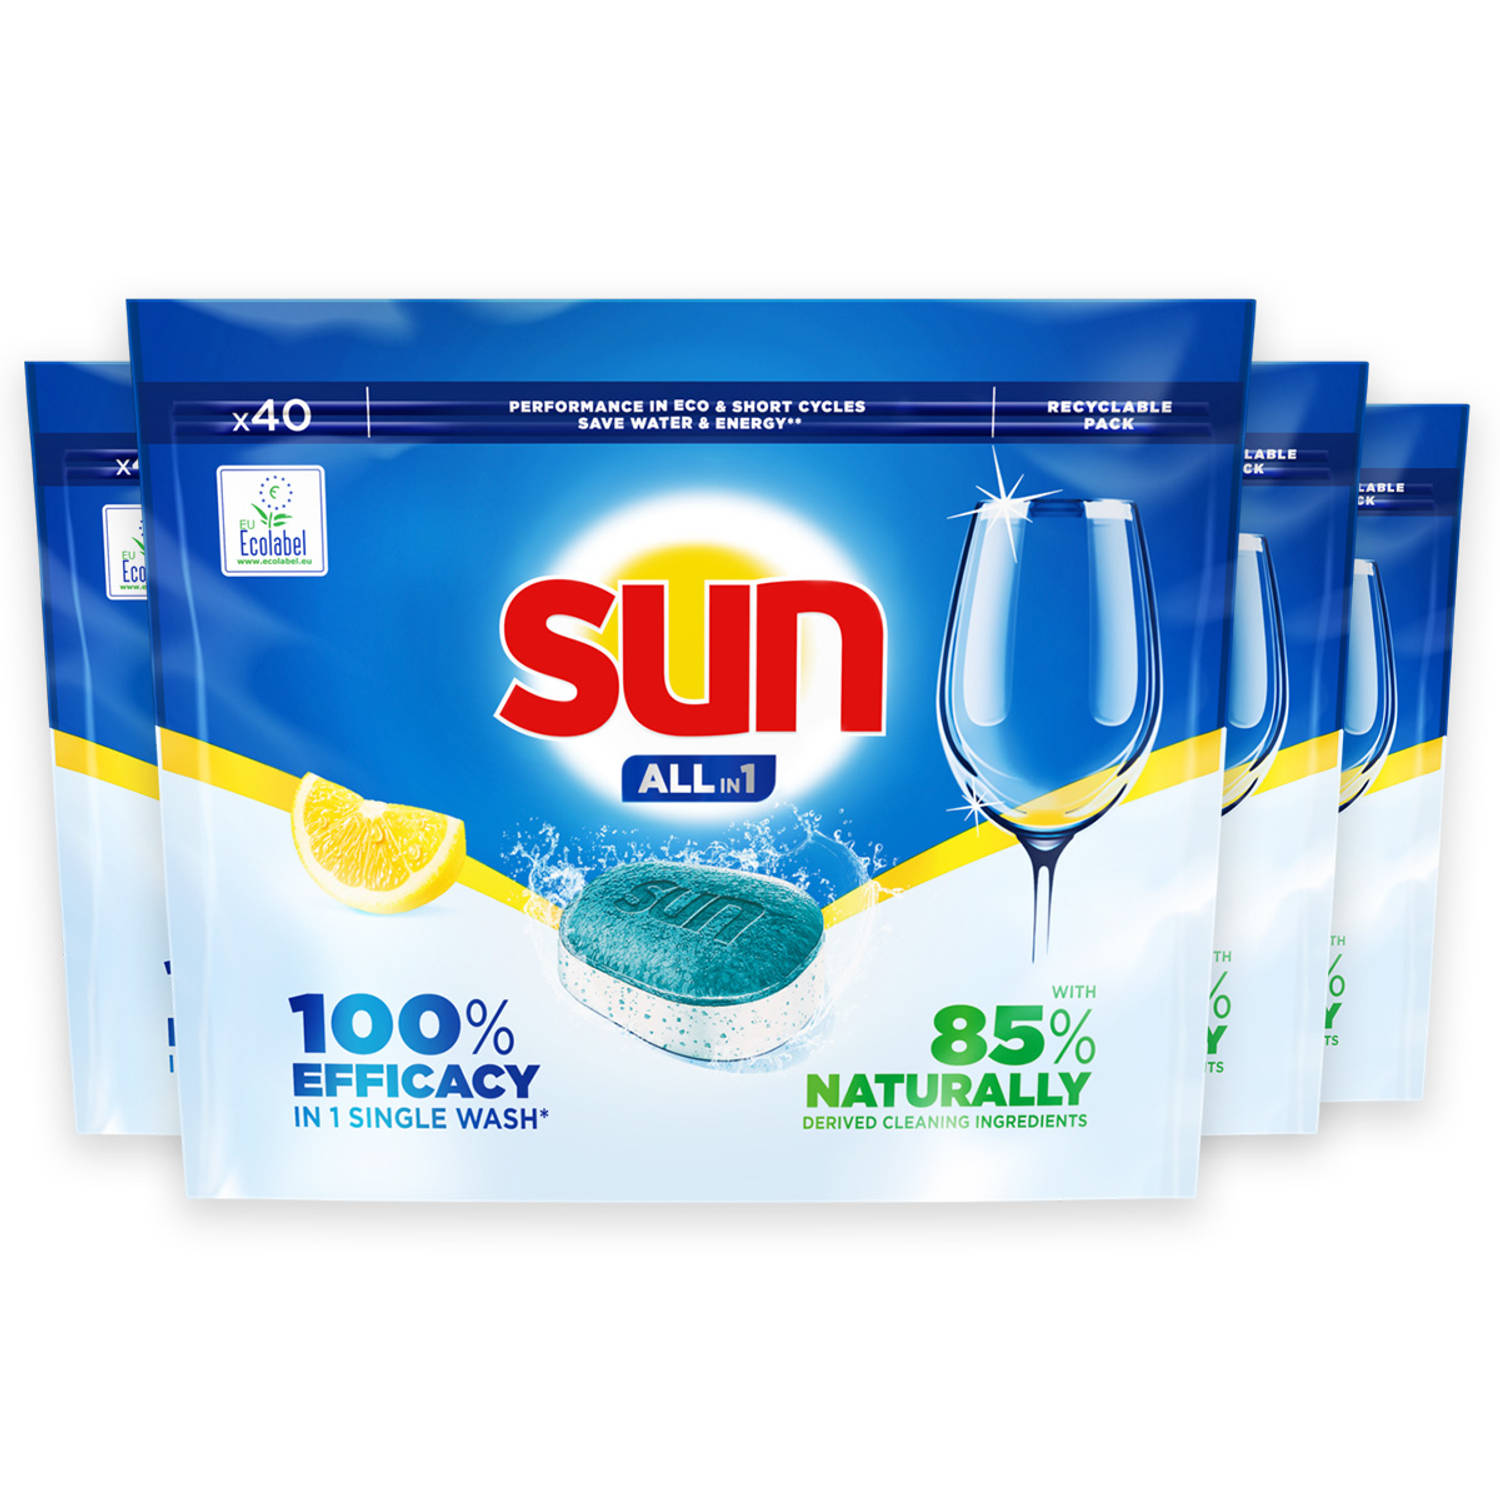 Sun All-in One - Vaatwastabletten - Citroen - Voordeelverpakking 4 x 40 stuks